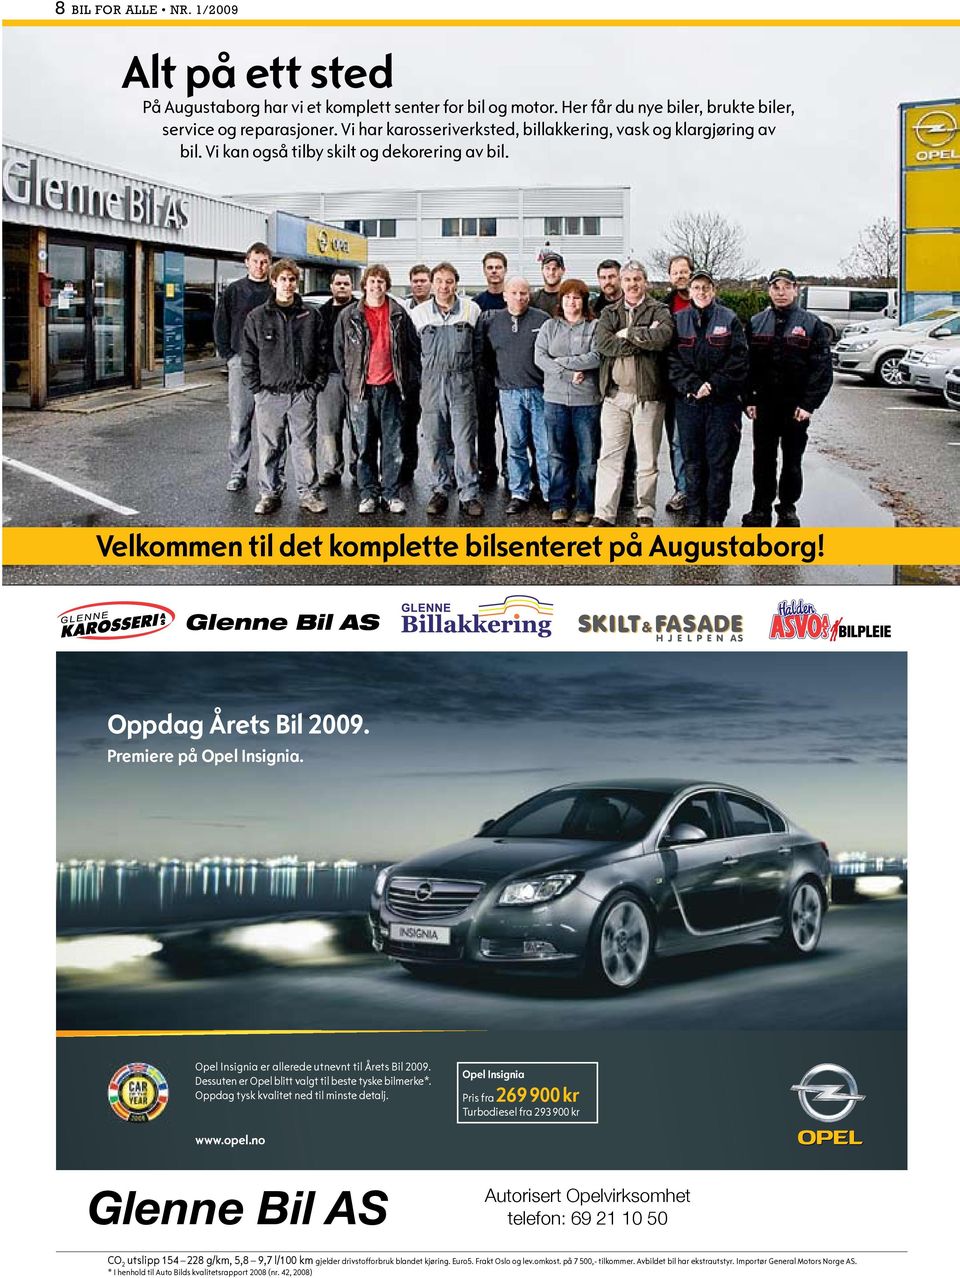 Glenne Bil AS Oppdag Årets Bil 2009. Premiere på Opel Insignia. Opel Insignia er allerede utnevnt til Årets Bil 2009. Dessuten er Opel blitt valgt til beste tyske bilmerke*.